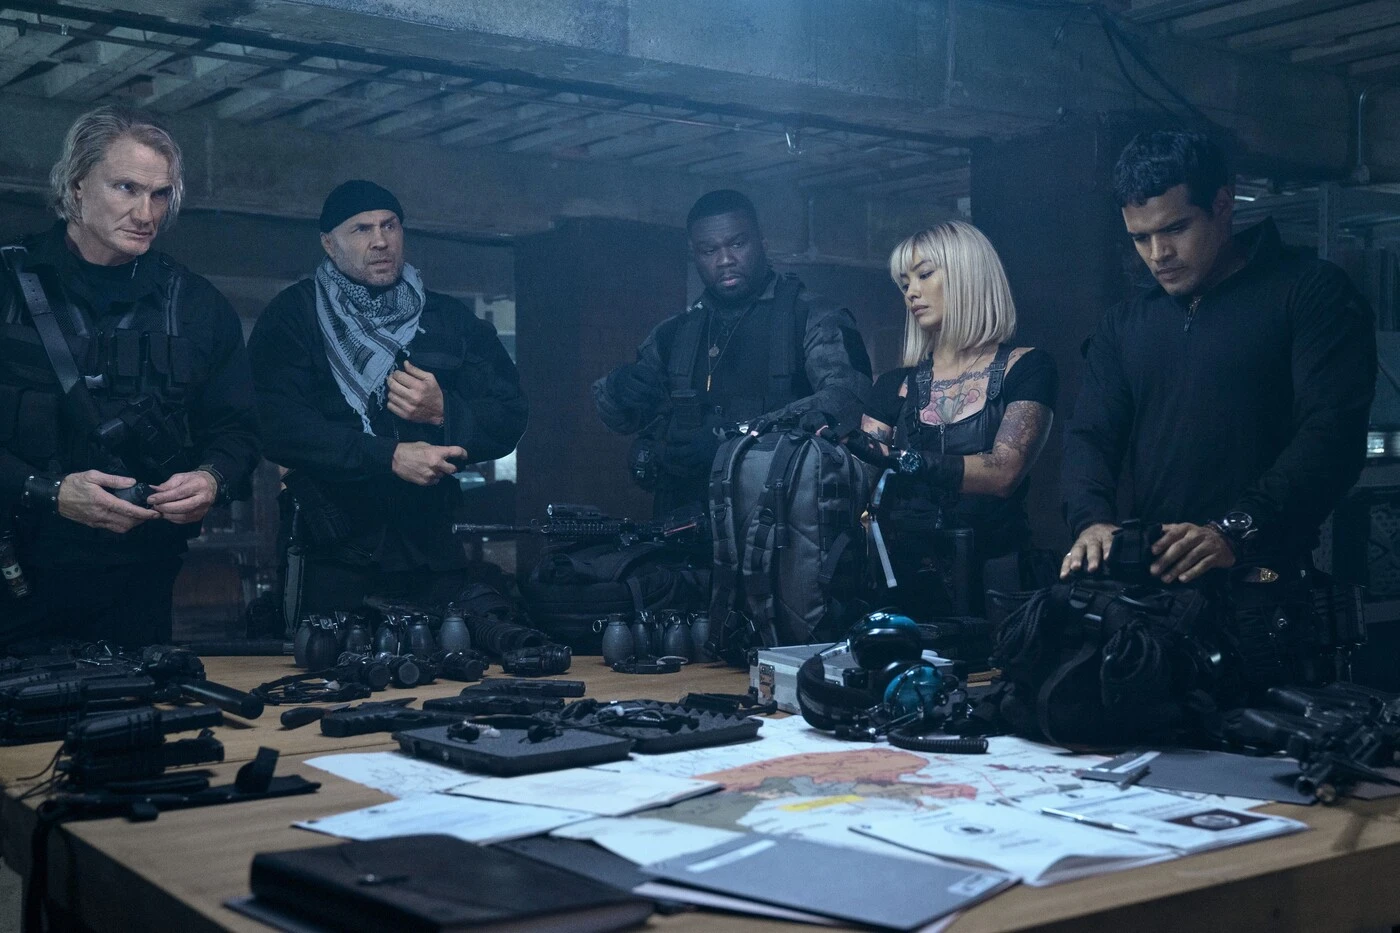 fünf Menschen in schwarzer Kleidung und schusssicheren Westen stehen in einem Lagerraum um einen Tisch, auf dem Tisch liegen Waffen, Munition und verschiedene Papiere